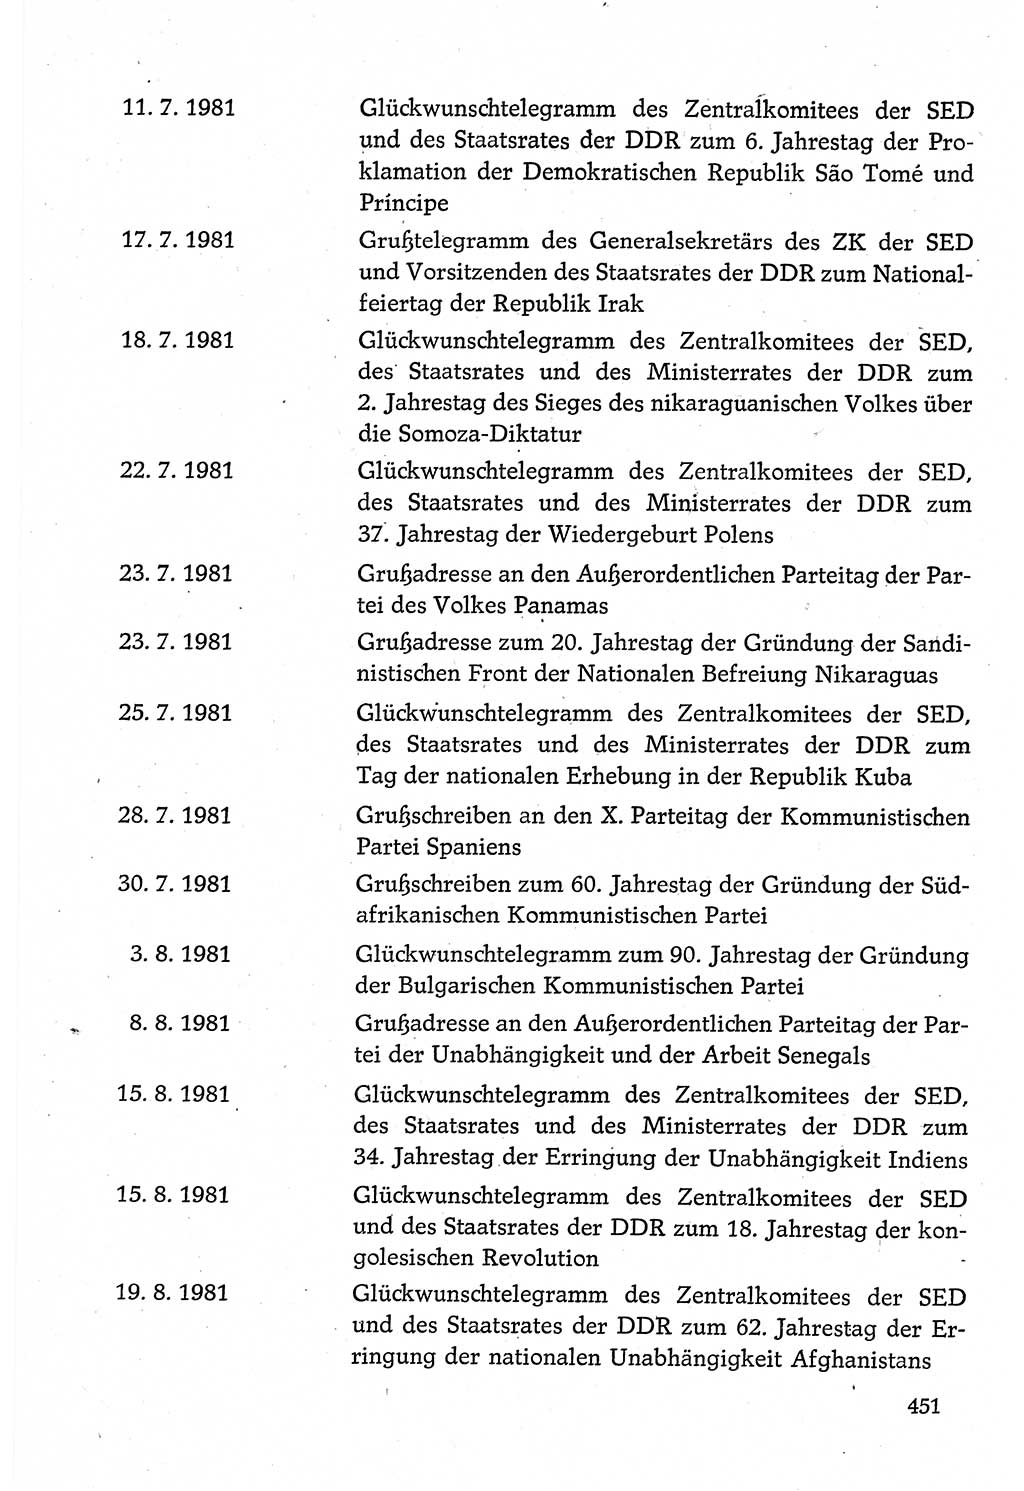 Dokumente der Sozialistischen Einheitspartei Deutschlands (SED) [Deutsche Demokratische Republik (DDR)] 1980-1981, Seite 451 (Dok. SED DDR 1980-1981, S. 451)